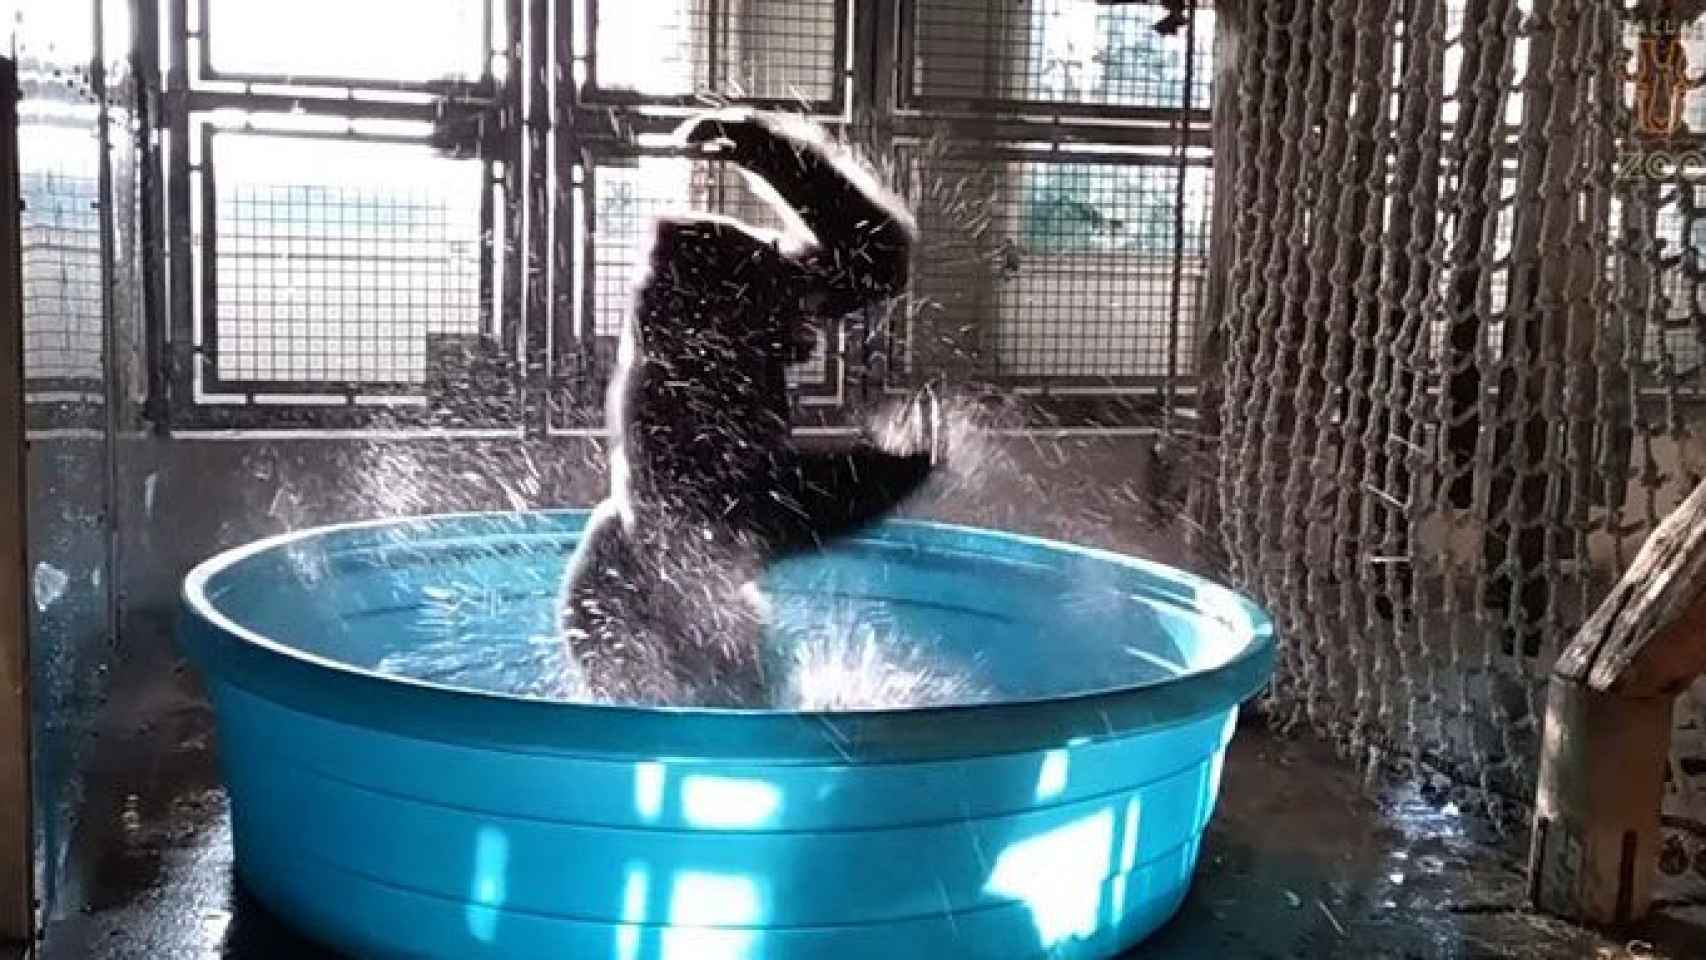 El baile del gorila Zola mientras se refresca se ha hecho viral / CG